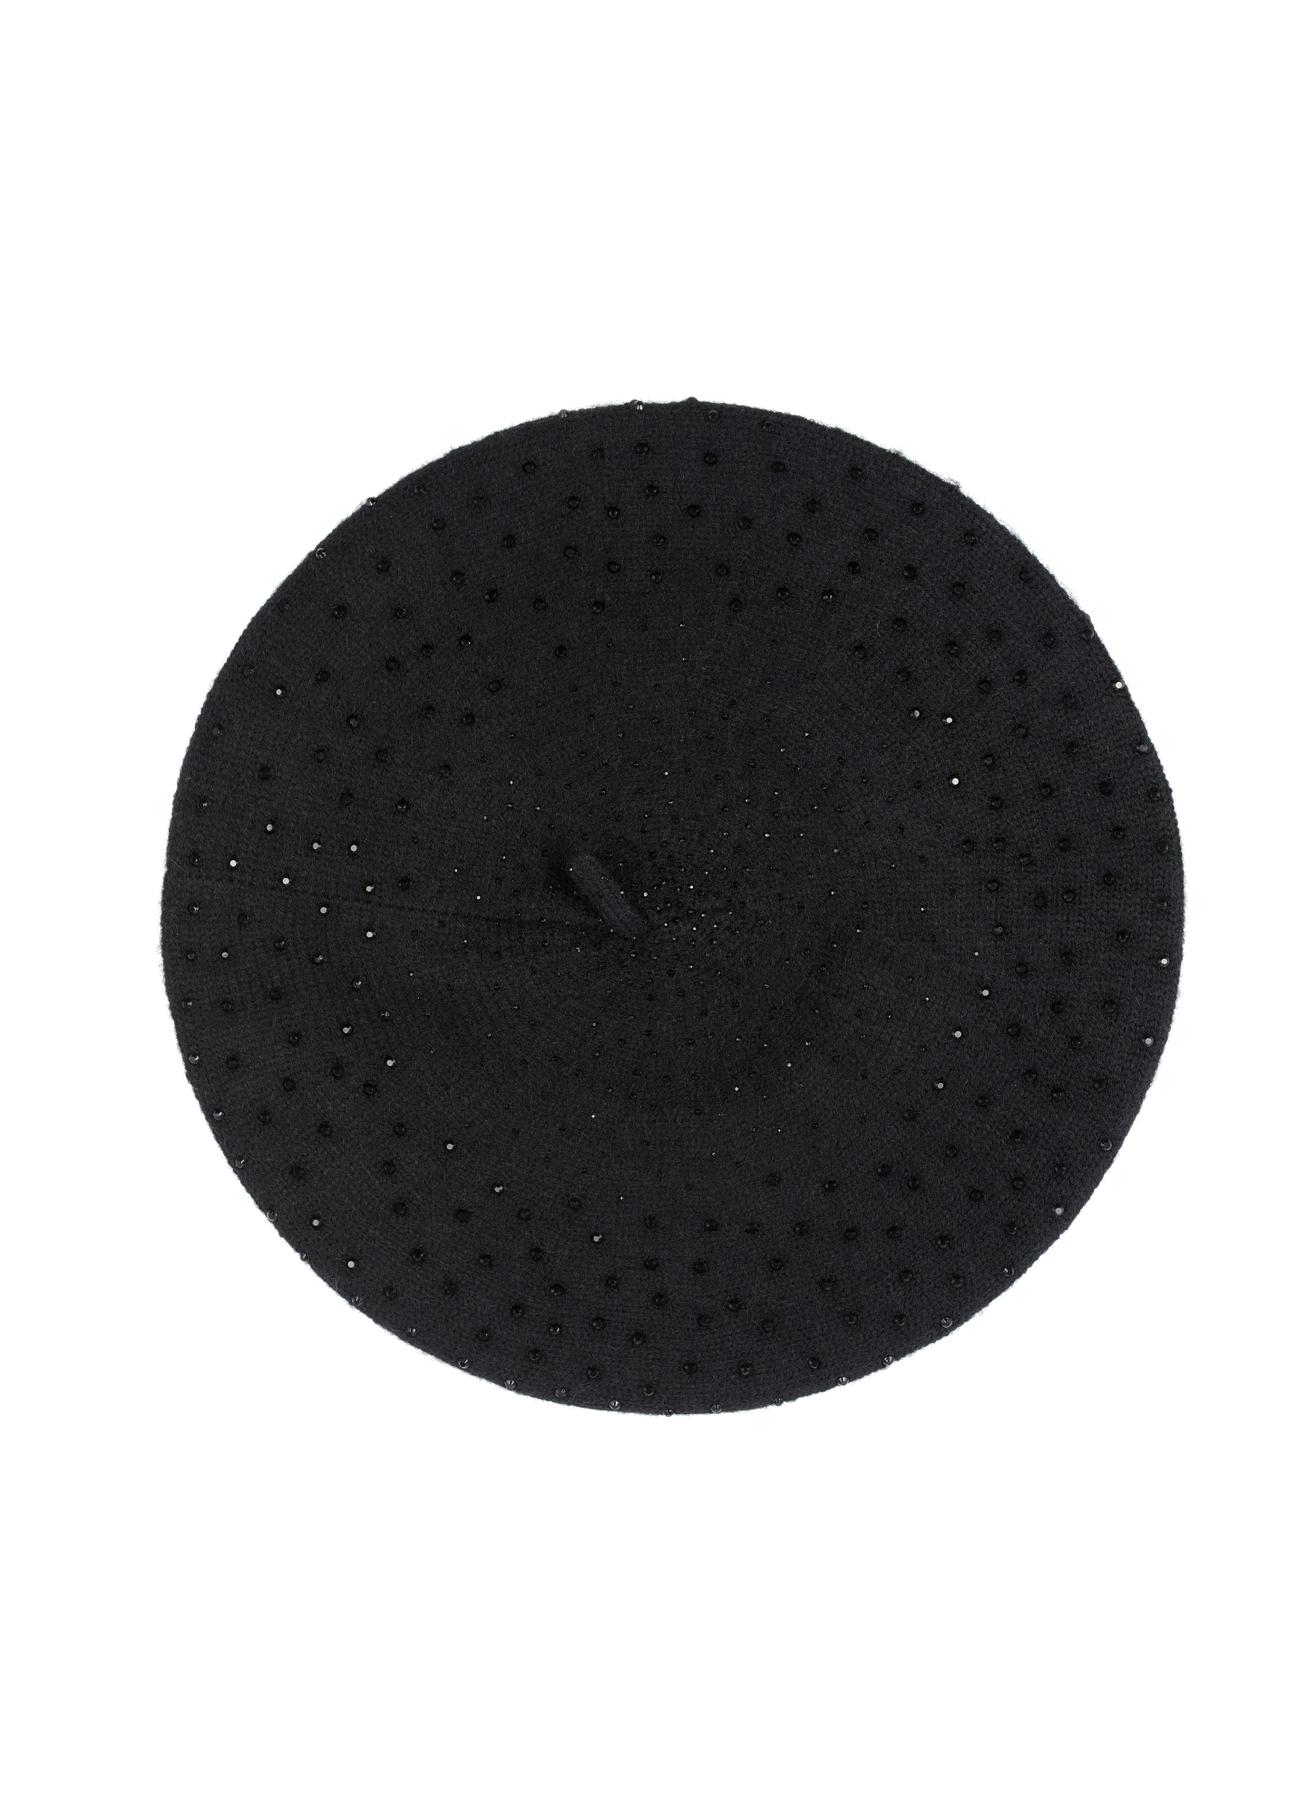 Czarny beret zimowy damski CZADT-0167-99(Z23)